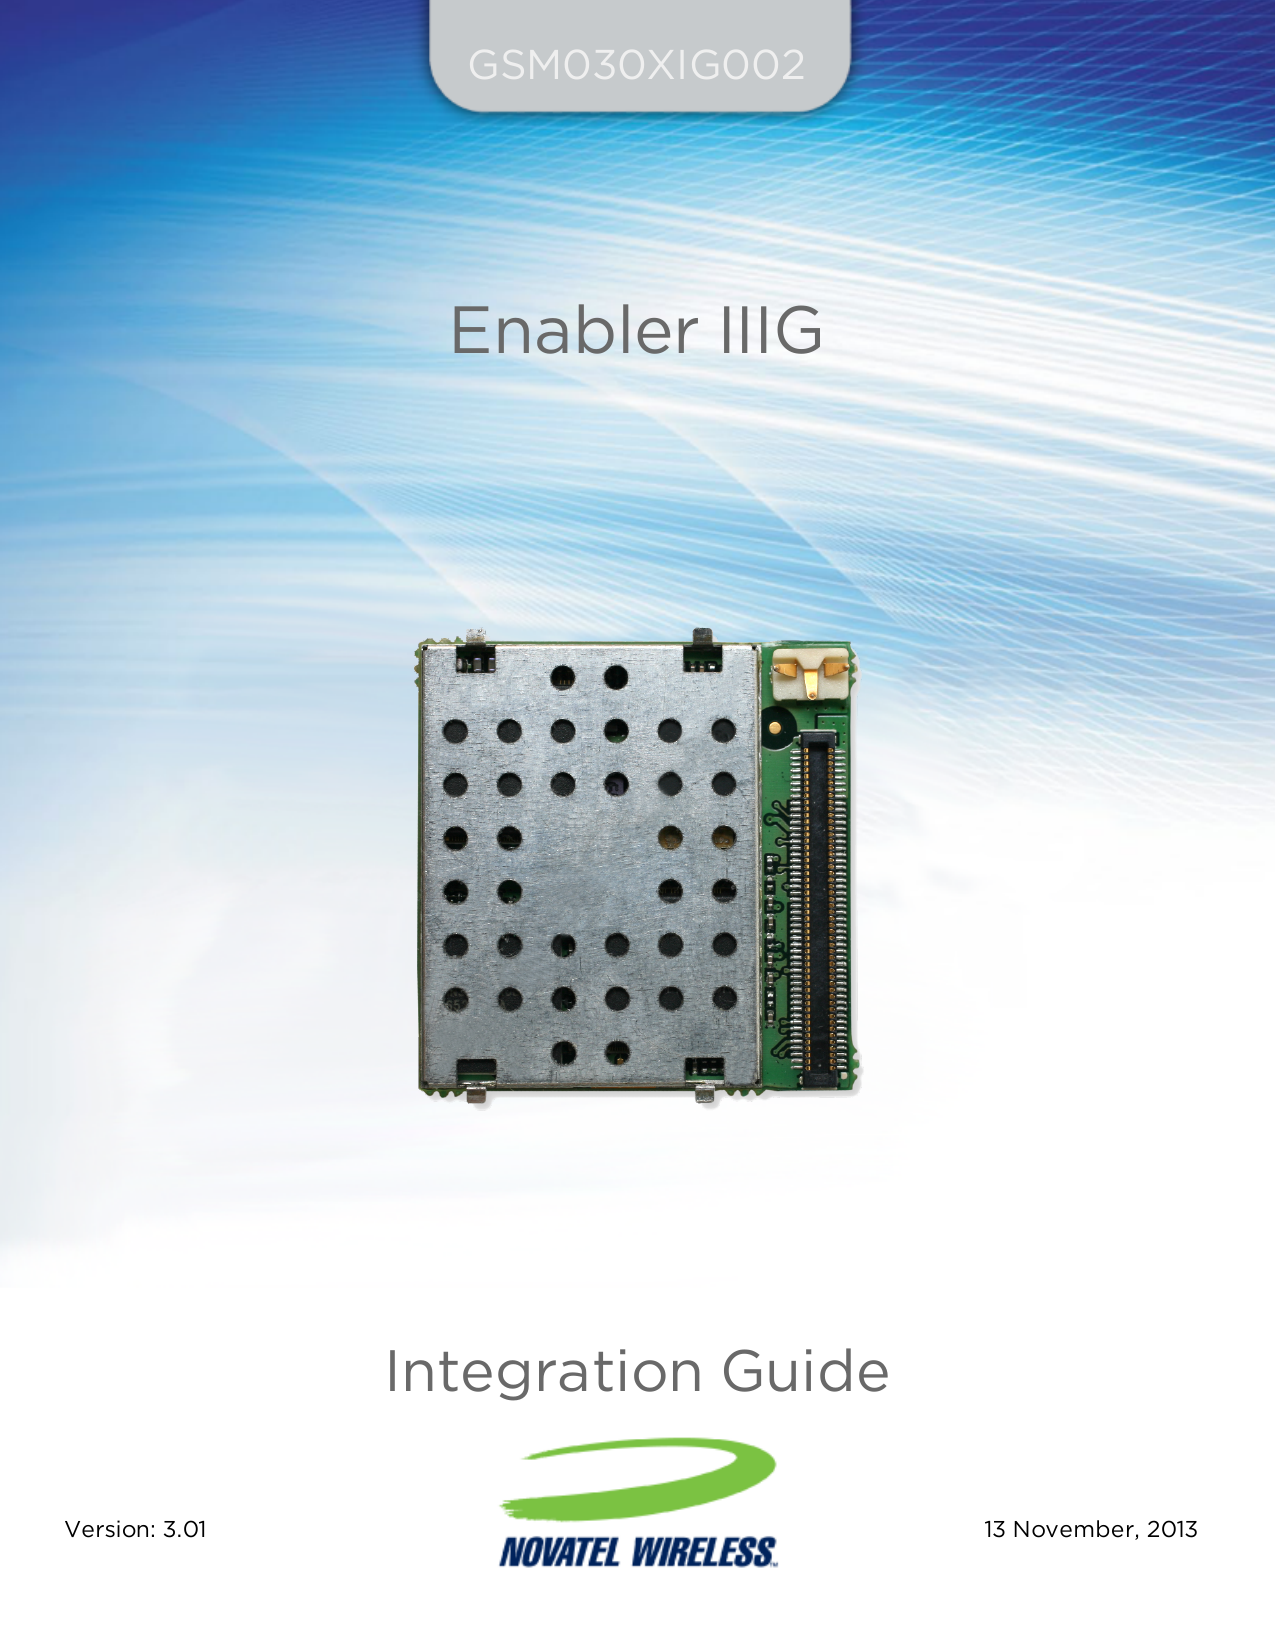 GSM030XIG002Enabler IIIGIntegration GuideVersion: 3.01  13 November, 2013